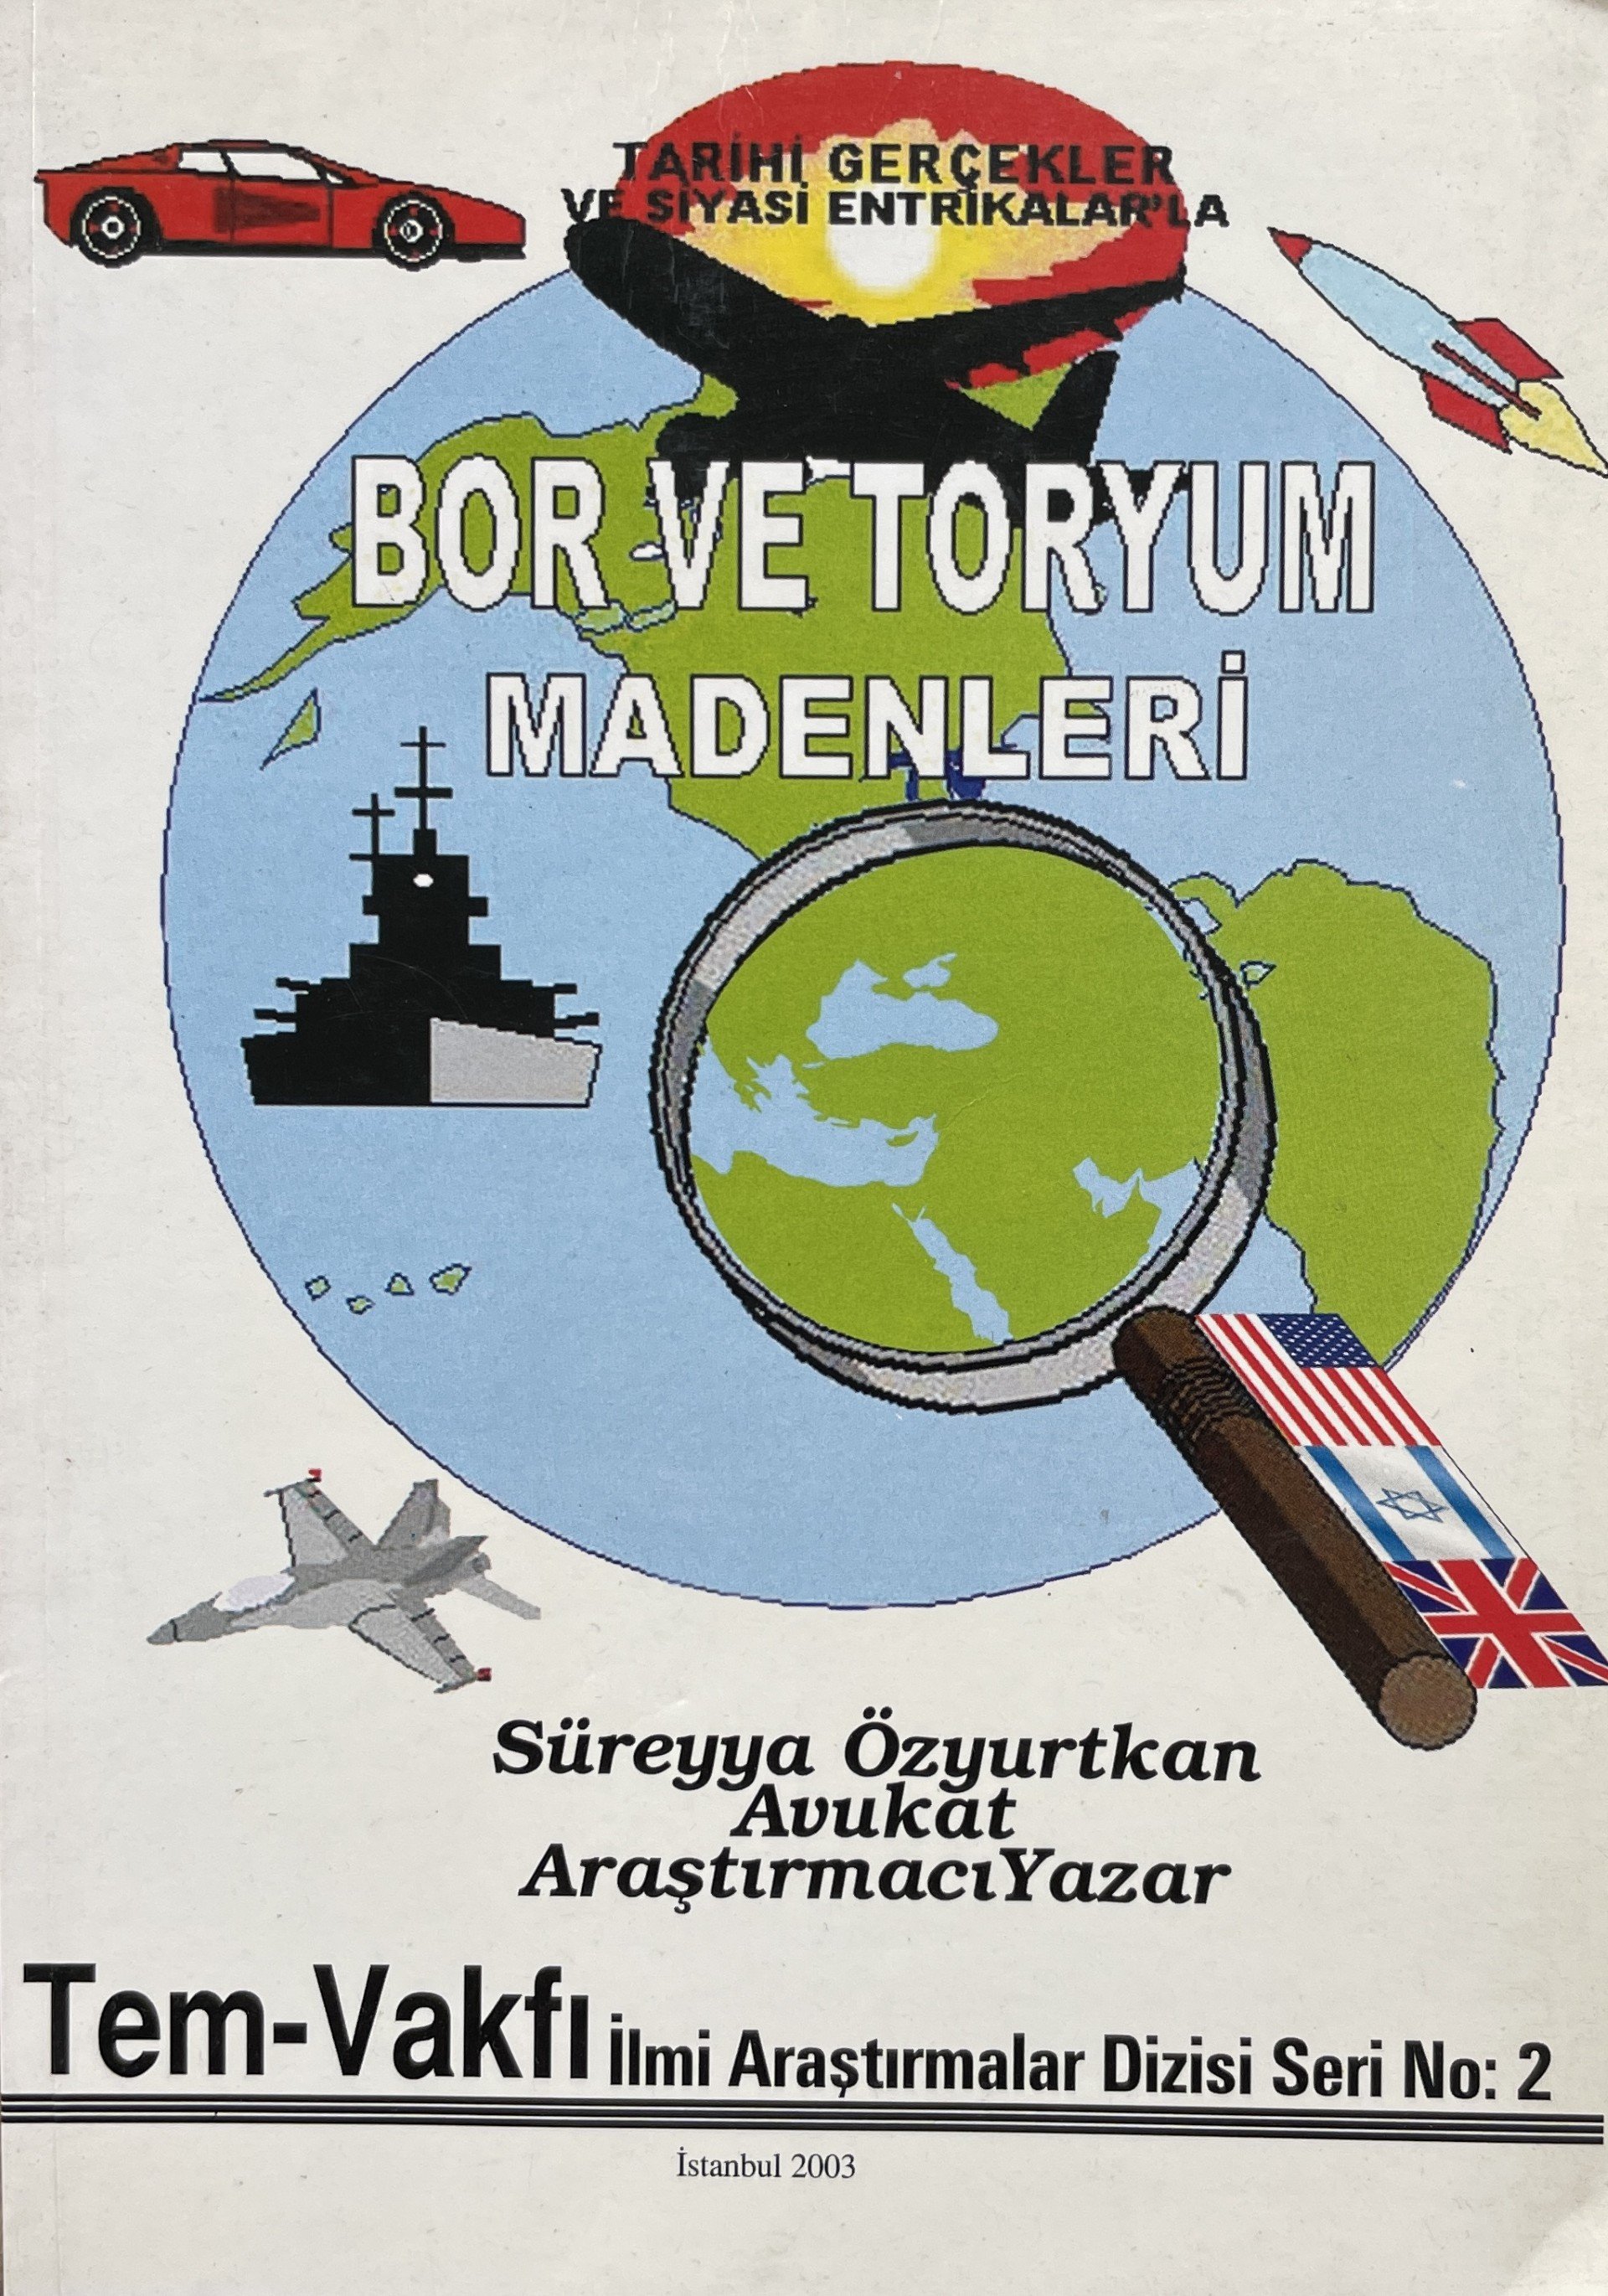 Avukat-Araştırmacı Yazar Süreyya Özyurtkan - Bor ve Toryum Madenleri Tarihi Gerçekler ve Siyasi Entrikalar'la